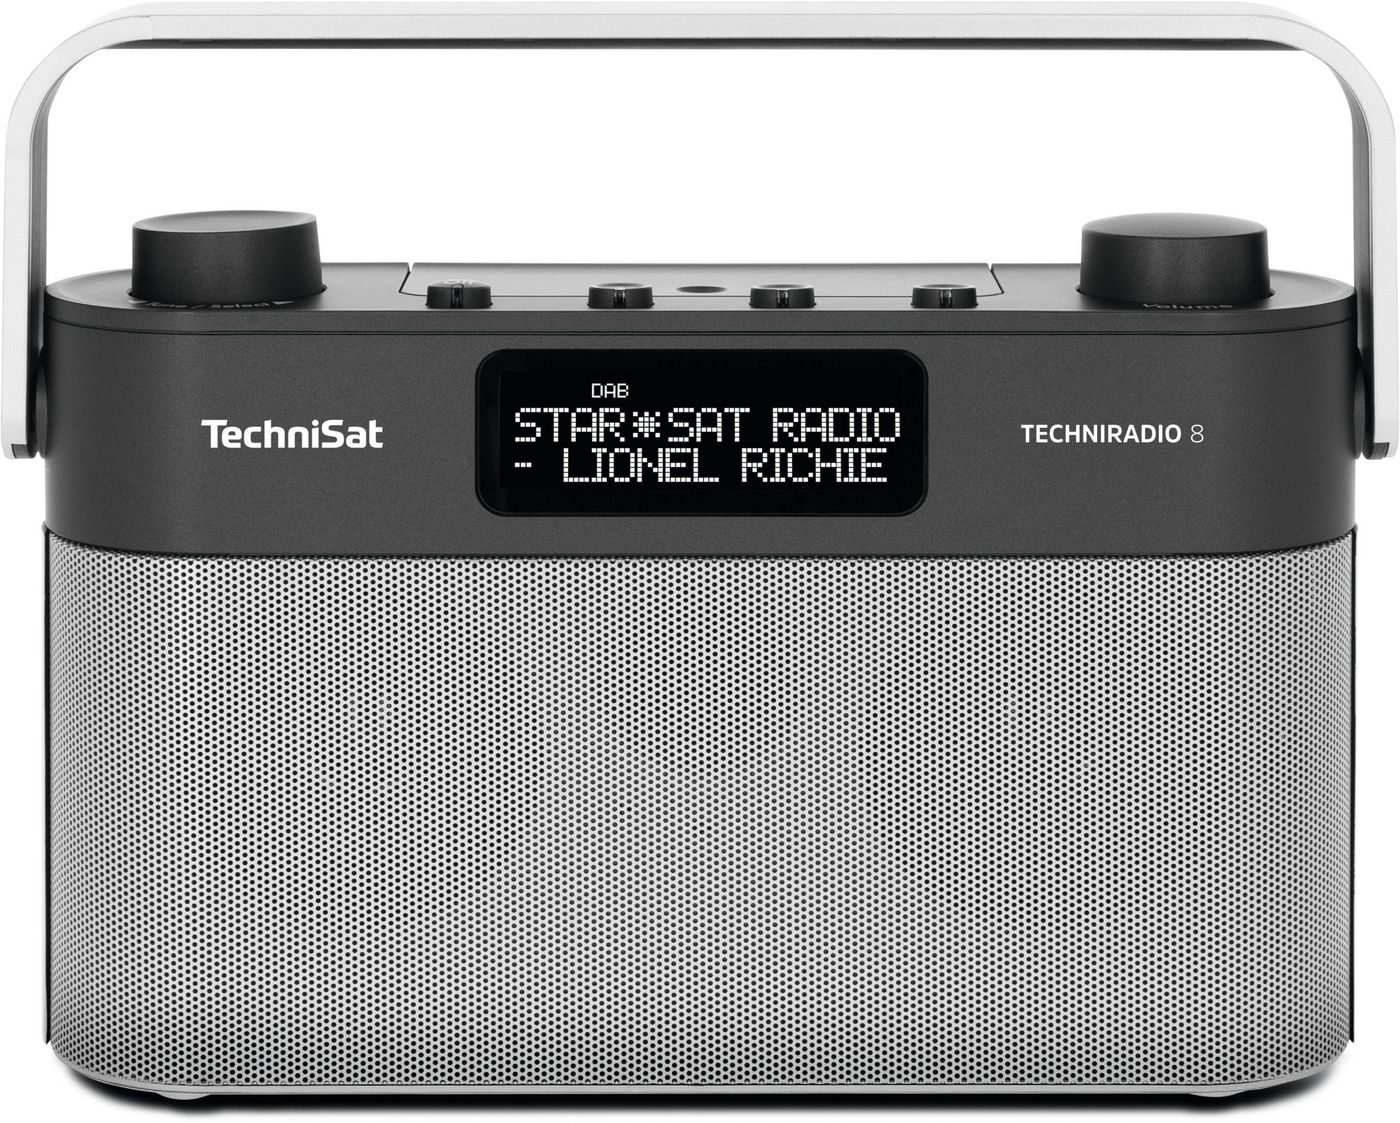 Technisat 00003930 W128262718 Techniradio 8 Portable Analog 